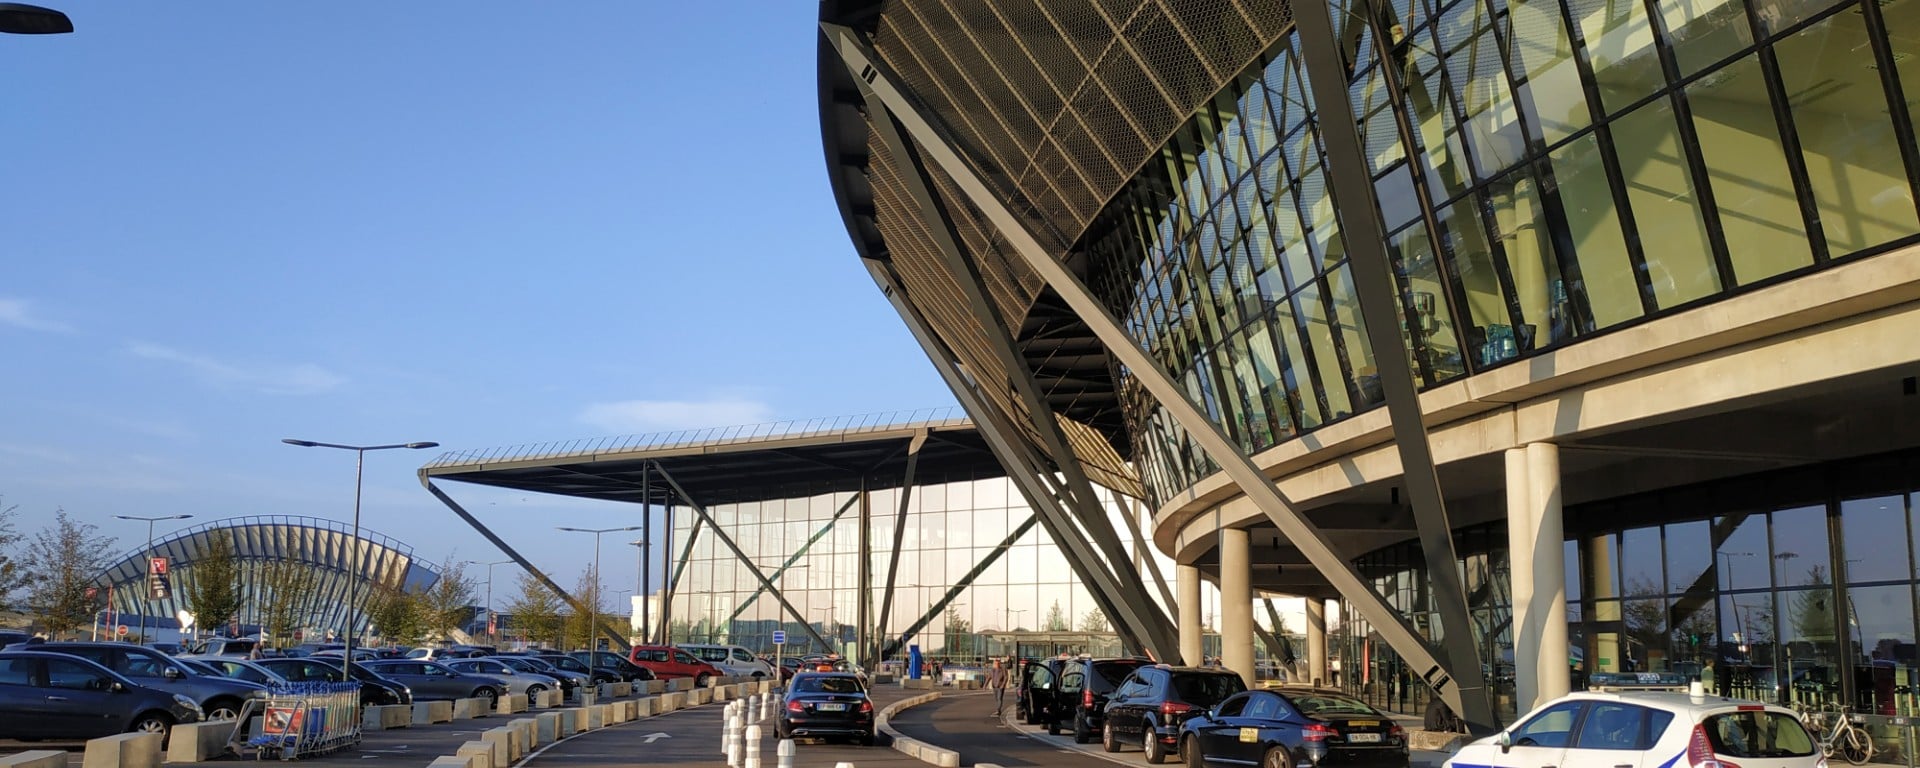 Aéroport Lyon Saint-Exupéry